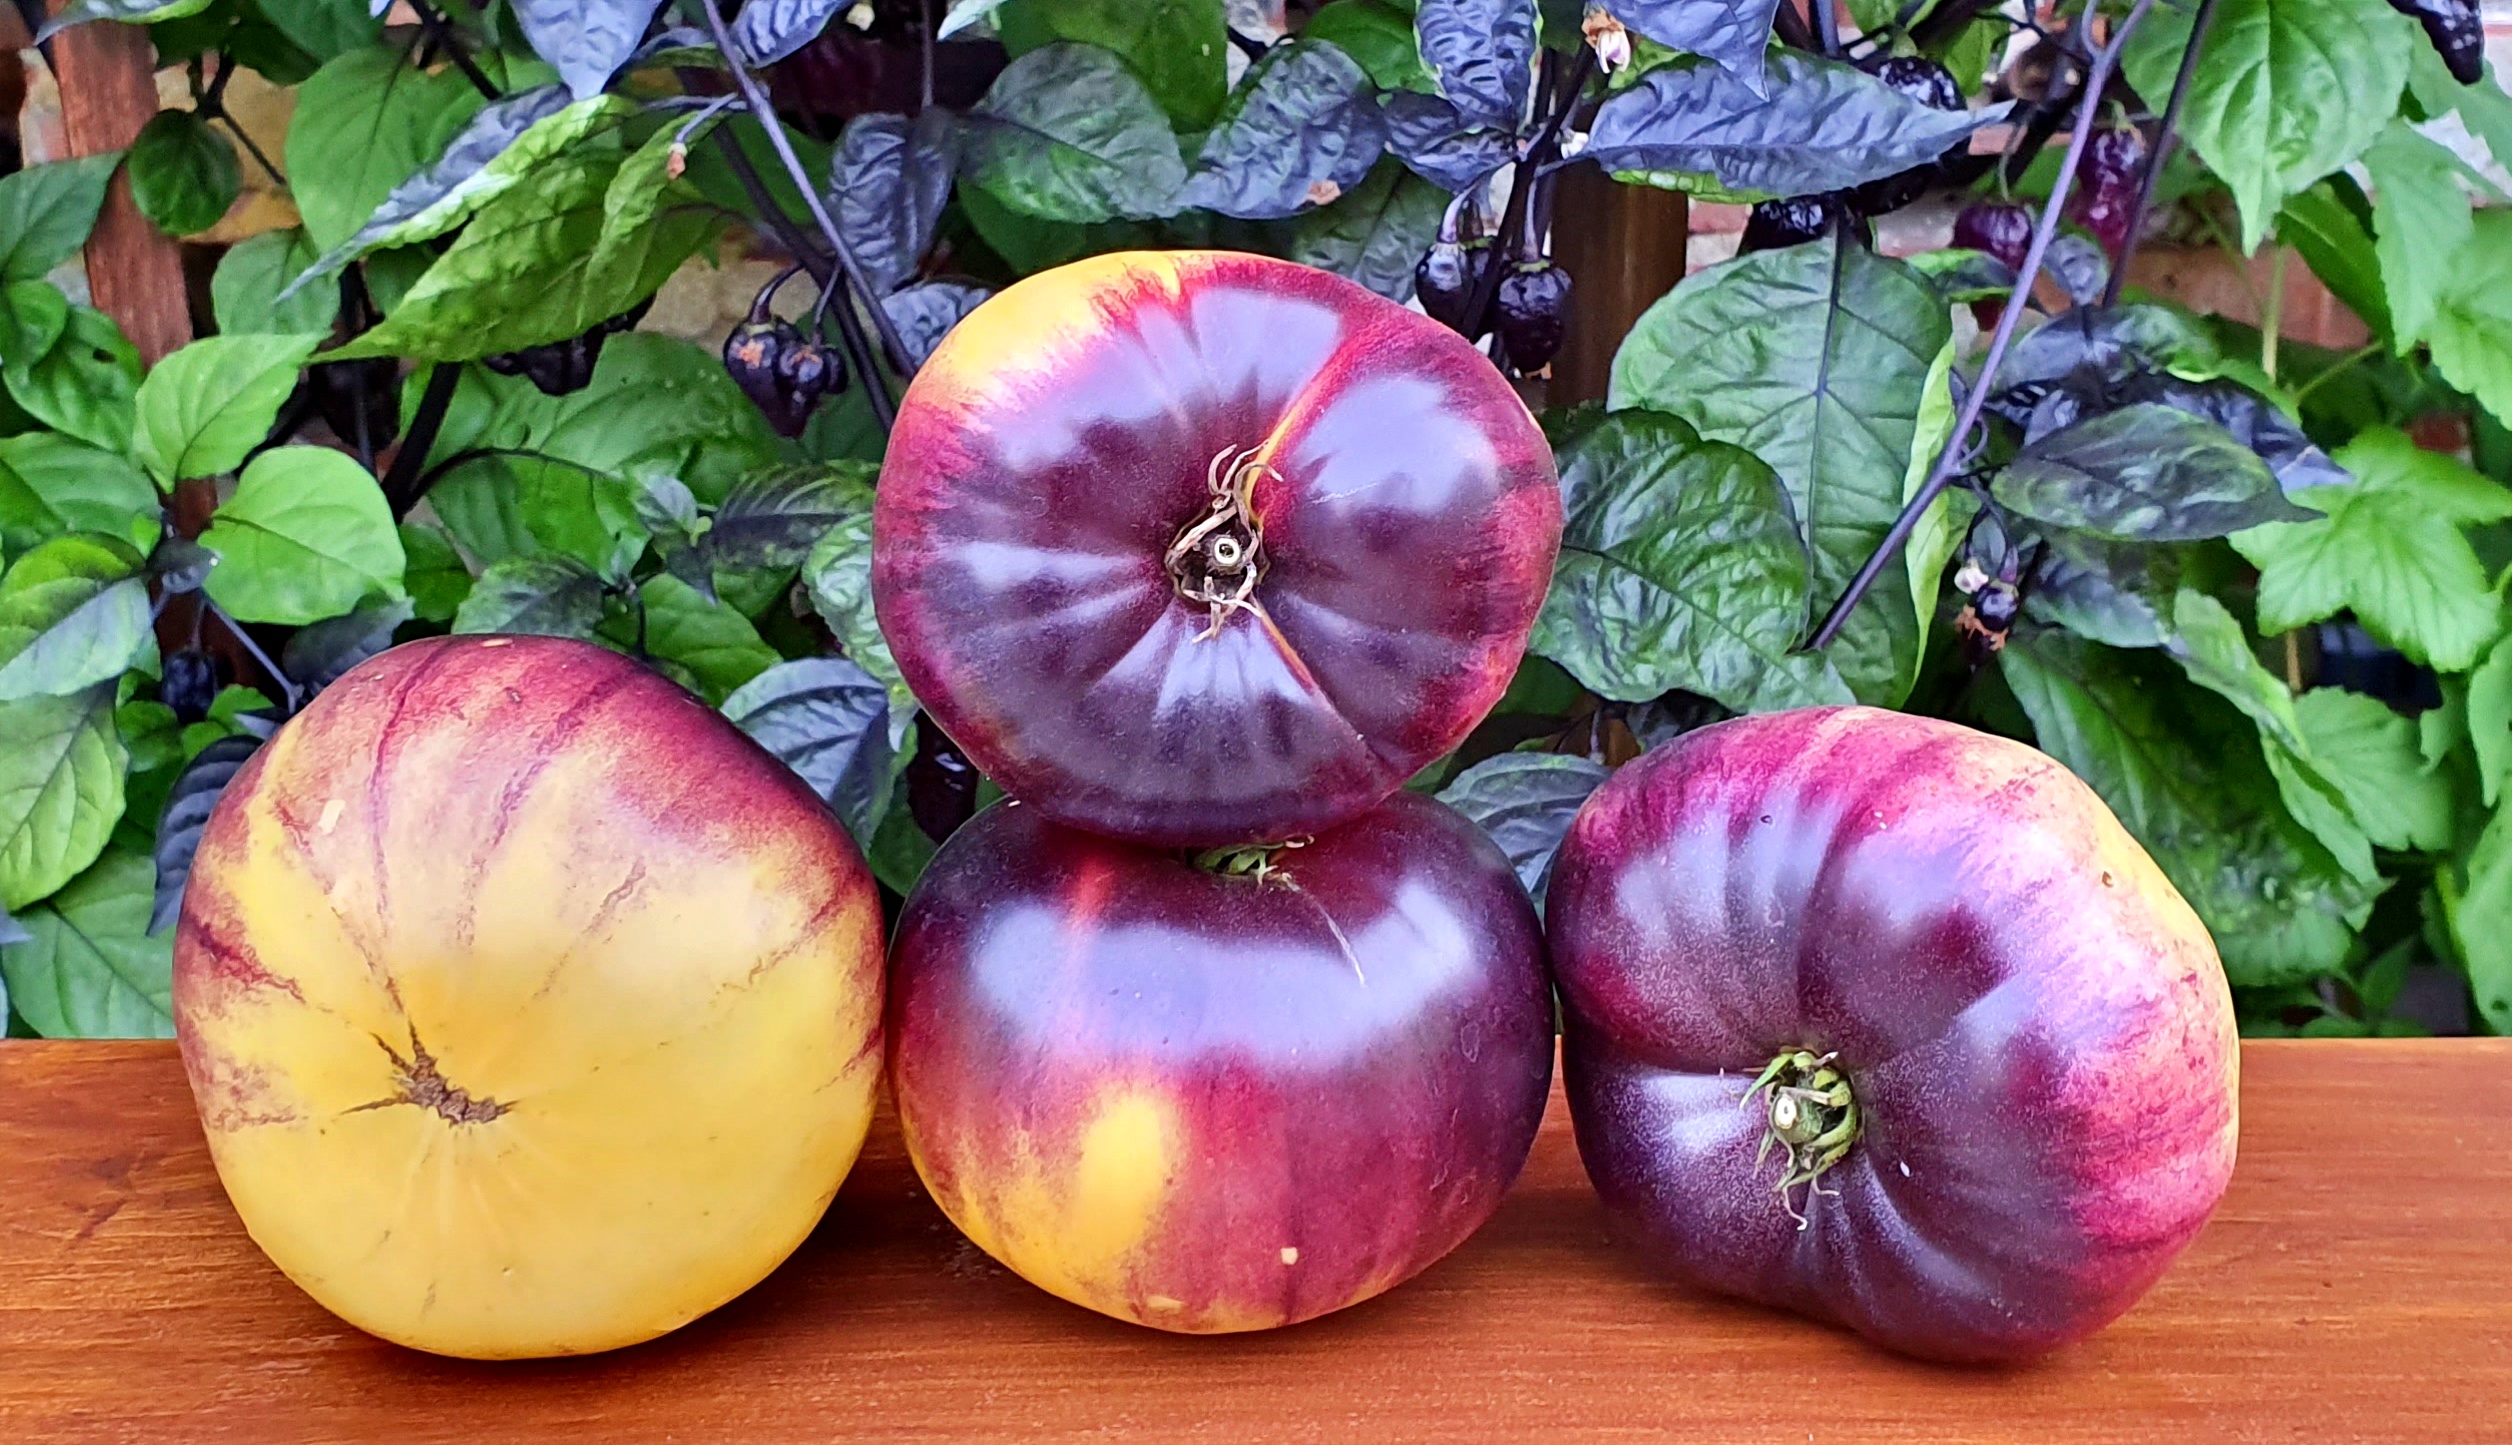 Yüklendi yükseklik belirsizlik sart roloise tomato - tridigiwet.com